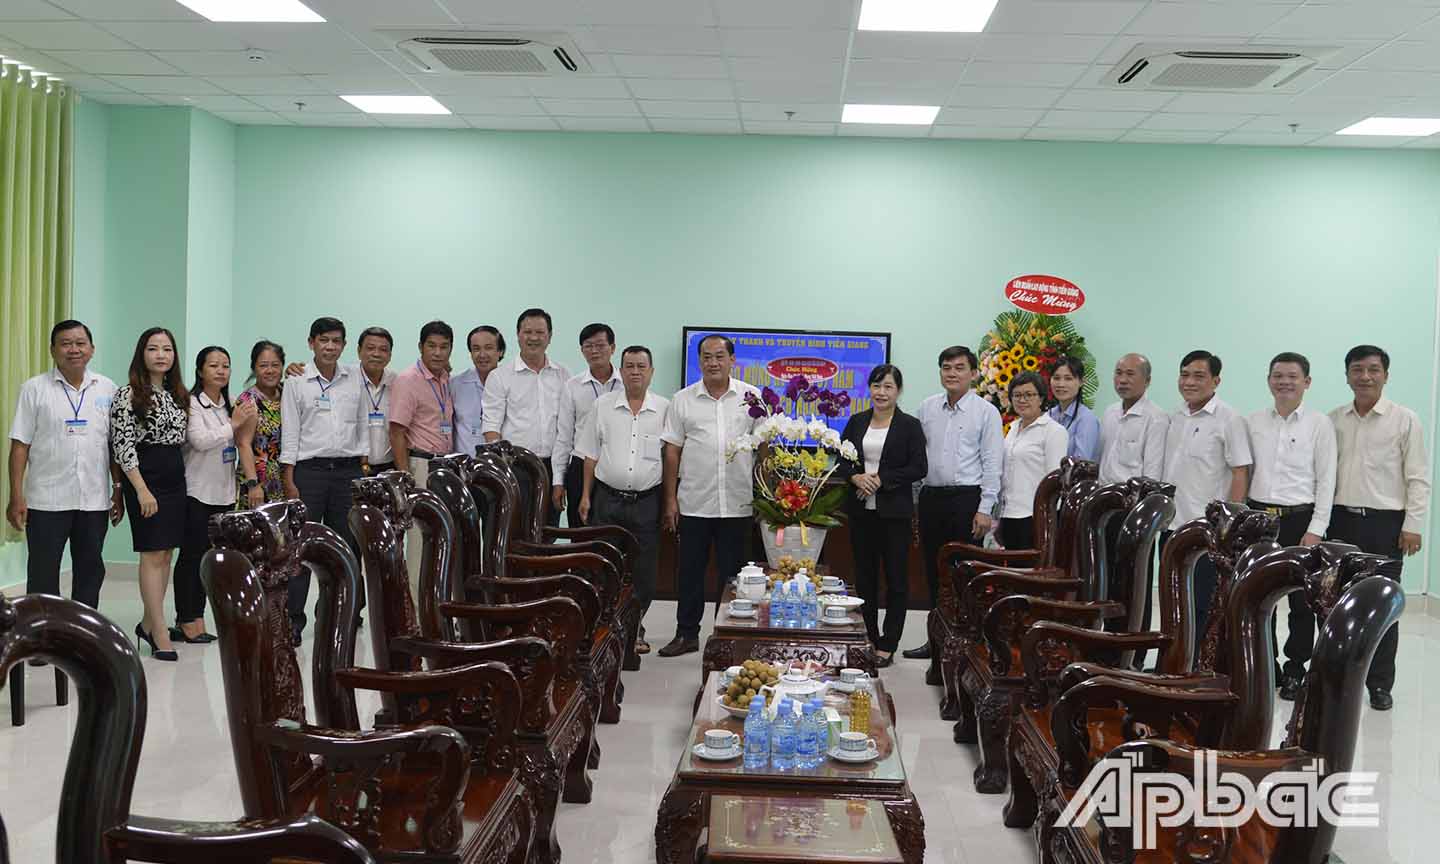 Đoàn đến thắm và chúc mừng Đài Phát thanh và Truyền hình tỉnh Tiền Giang.